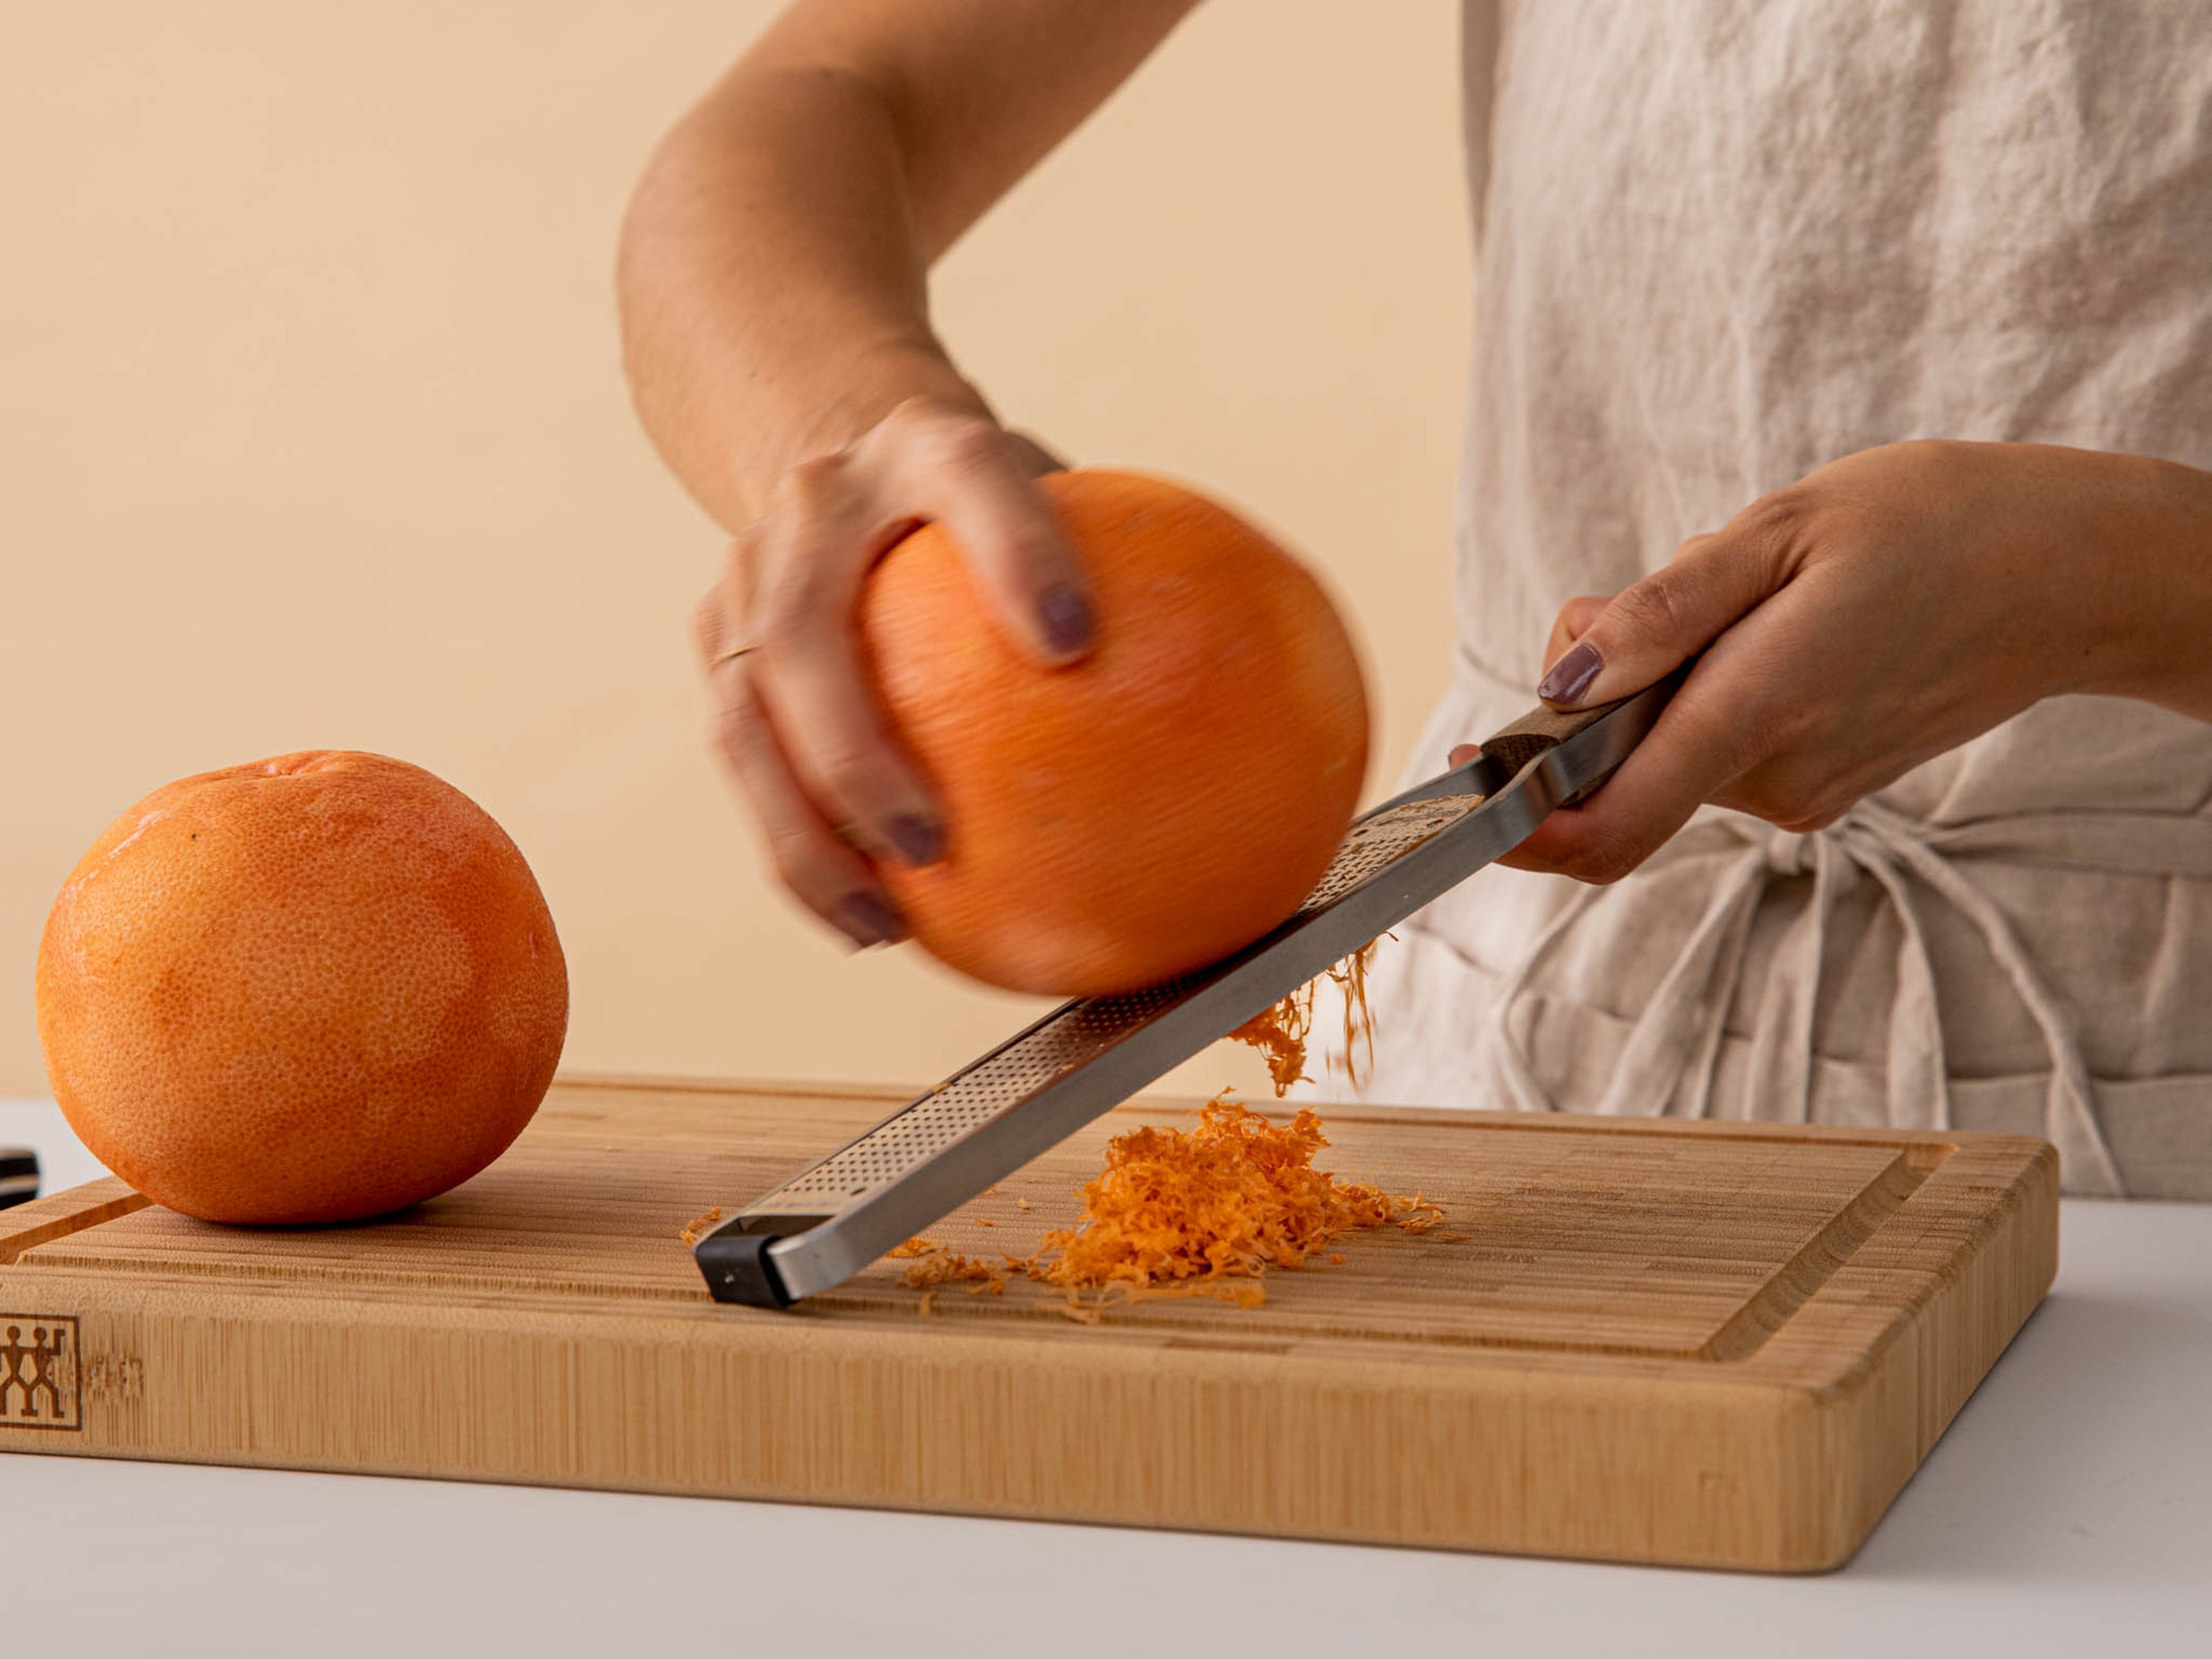 Grapefruitschale abreiben. Dann halbiere die Grapefruit und entsafte ¾ des Saftes. Hebe den Rest für später zum Servieren auf.